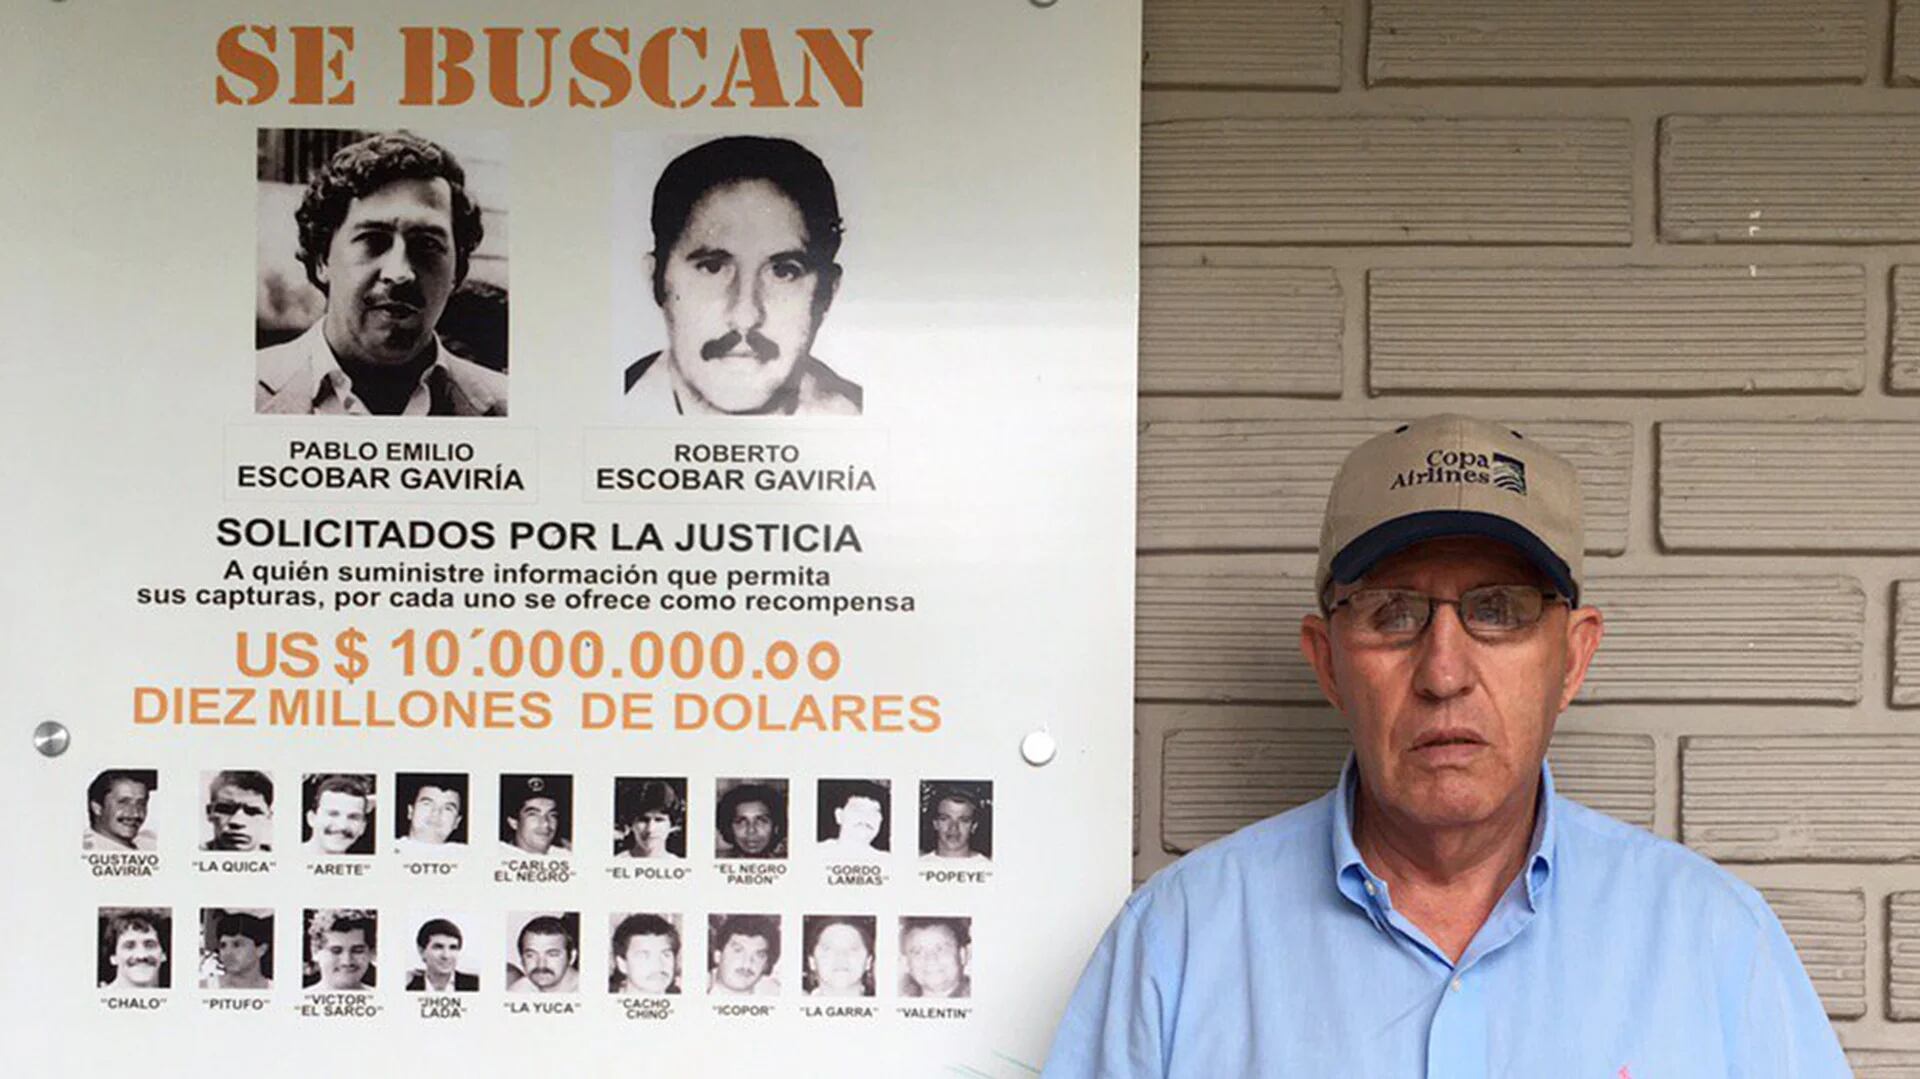 Roberto Escobar Gaviria, alias El Osito, dueño de la casa museo en honor a su hermano, Pablo Escobar Gaviria.